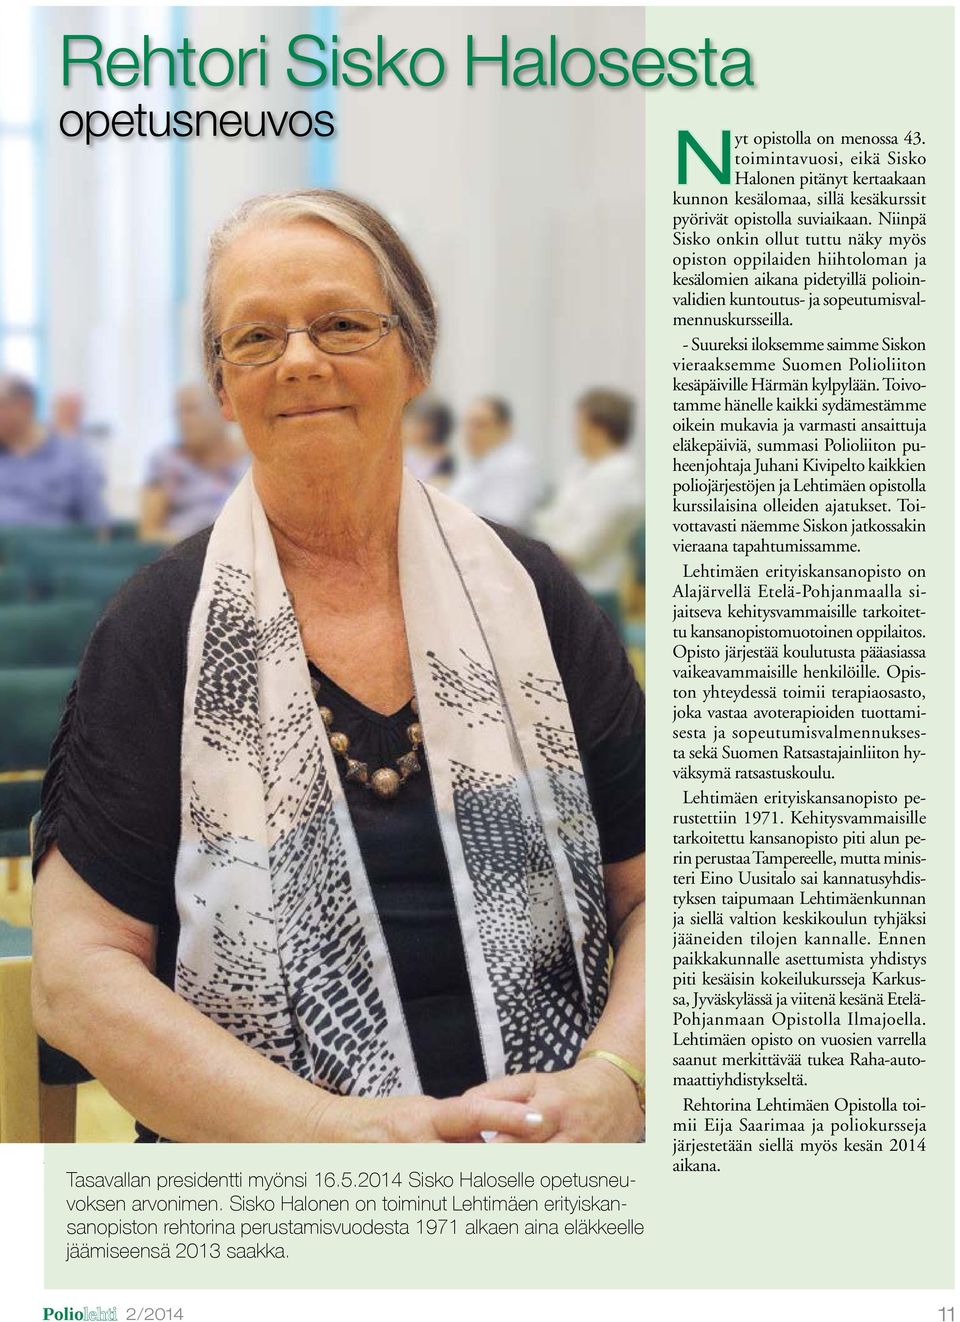 Sisko Halonen on toiminut Lehtimäen erityiskansanopiston rehtorina perustamisvuodesta 1971 alkaen aina eläkkeelle jäämiseensä 2013 saakka. Nyt opistolla on menossa 43.